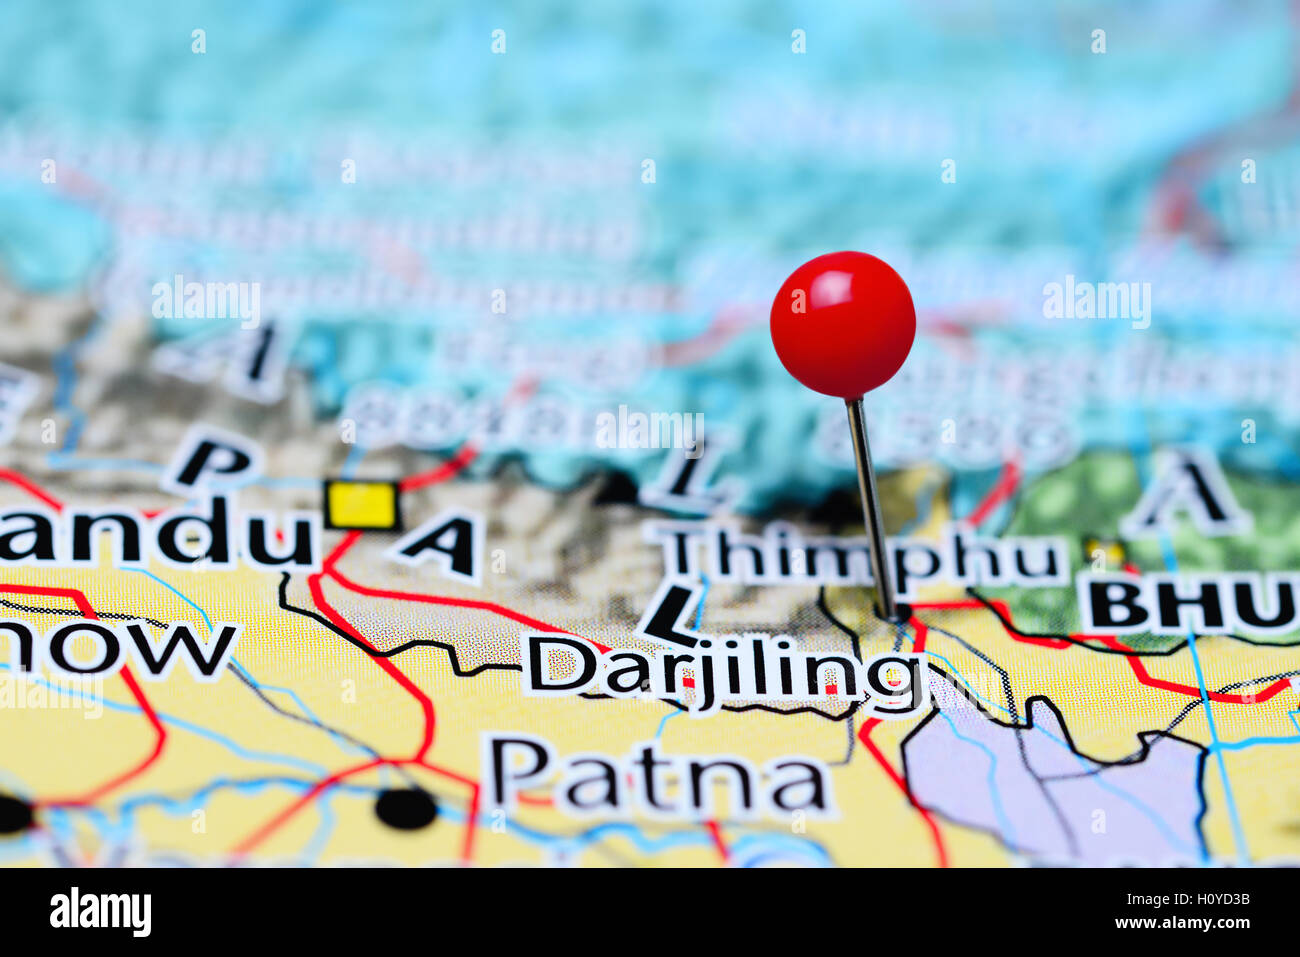 Darjiling pinned on a map of Nepal Stock Photo